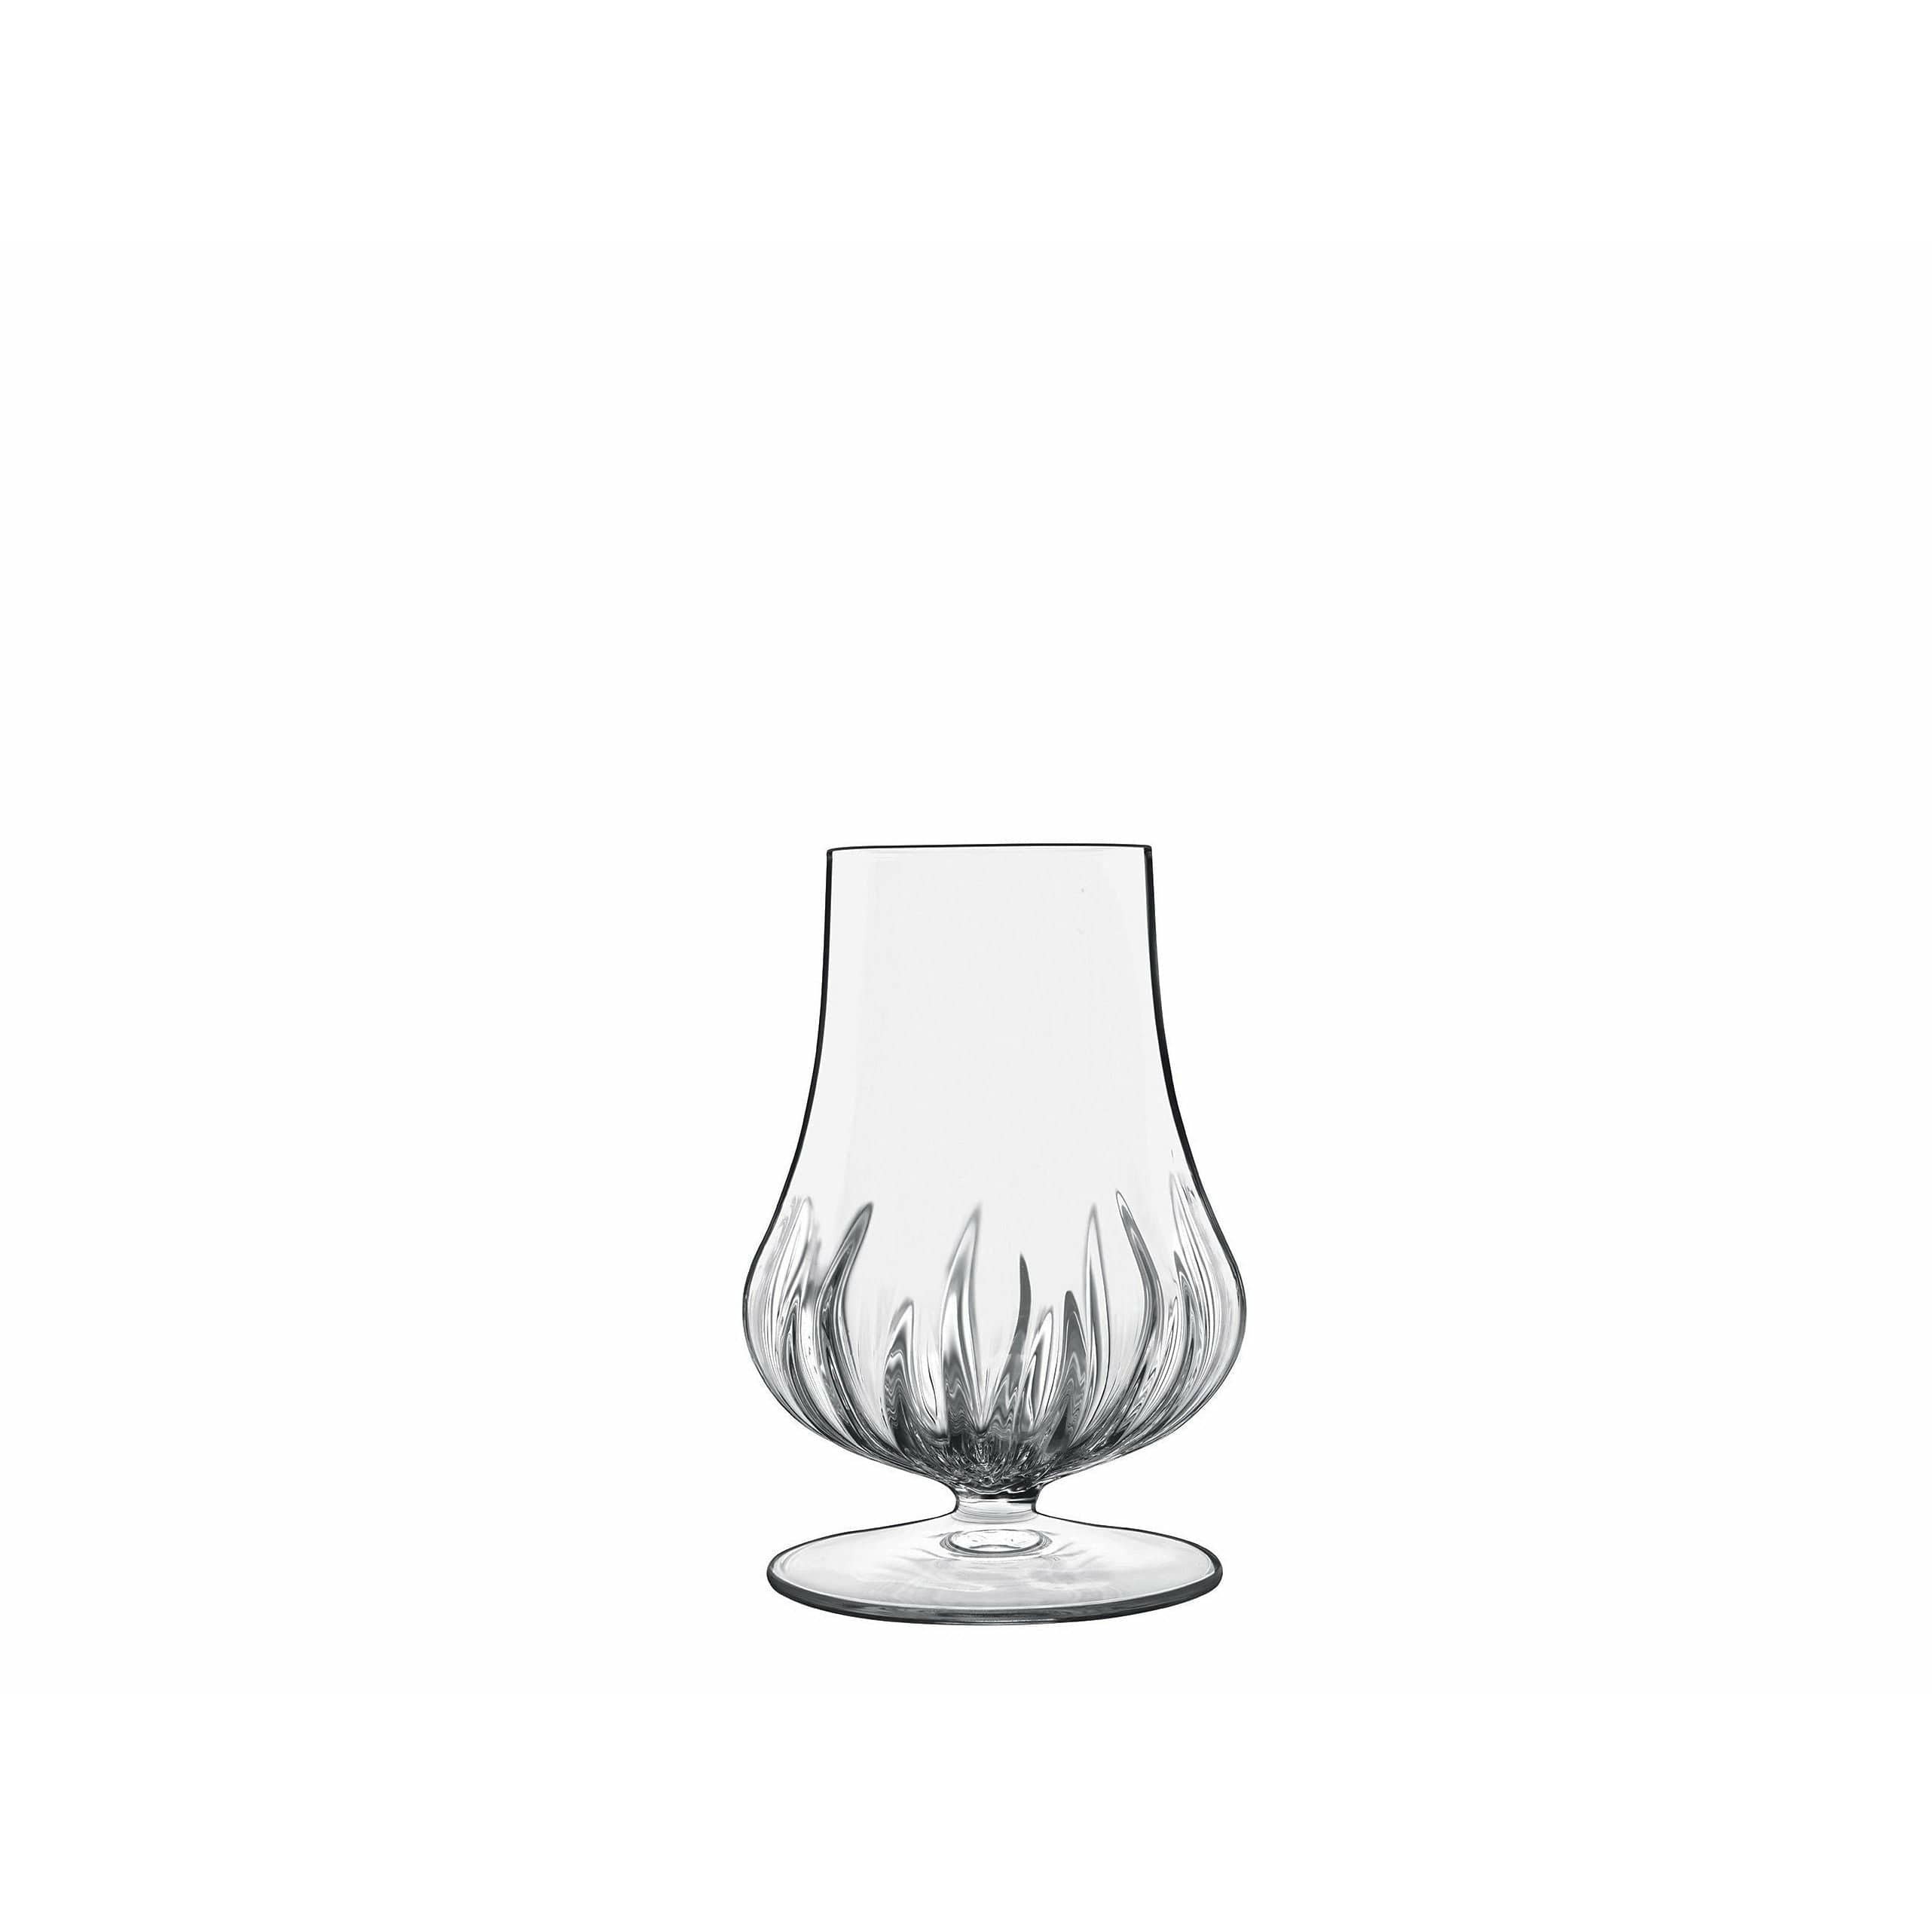 Luigi Bormioli Mixology Spirits玻璃/威士忌玻璃1 PC